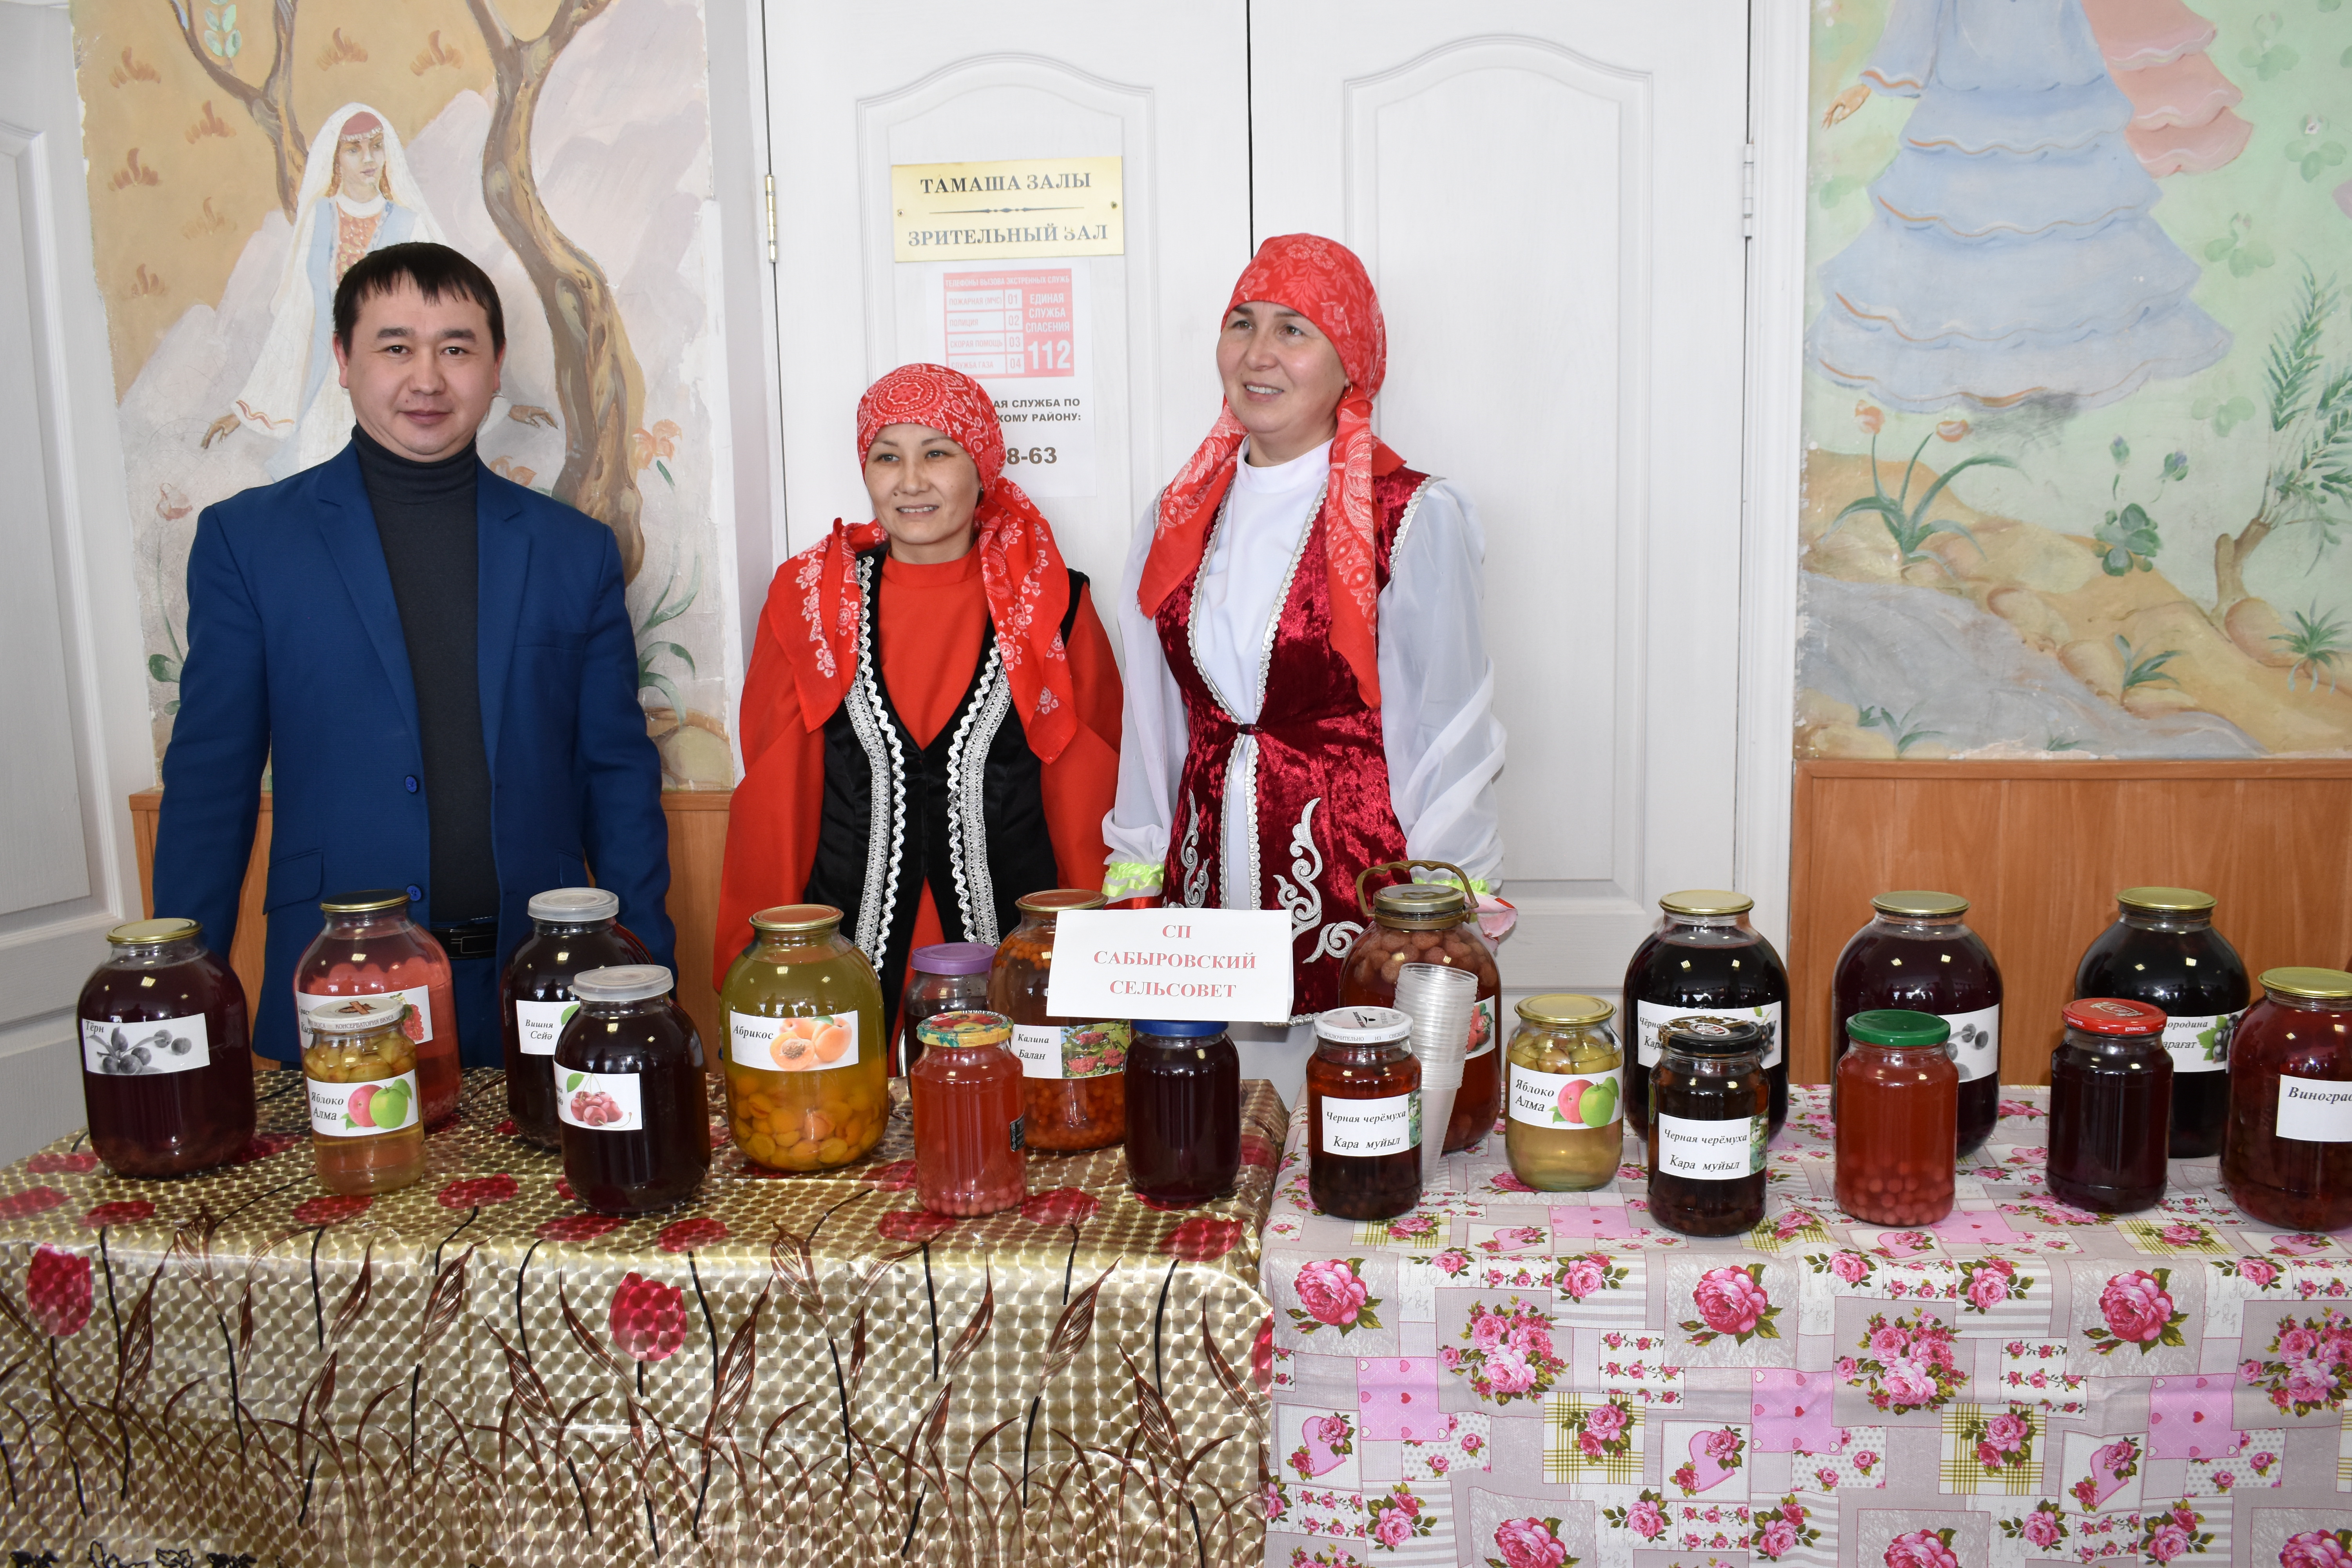 В Юлдыбаево подвели итоги конкурса "Национальные напитки"